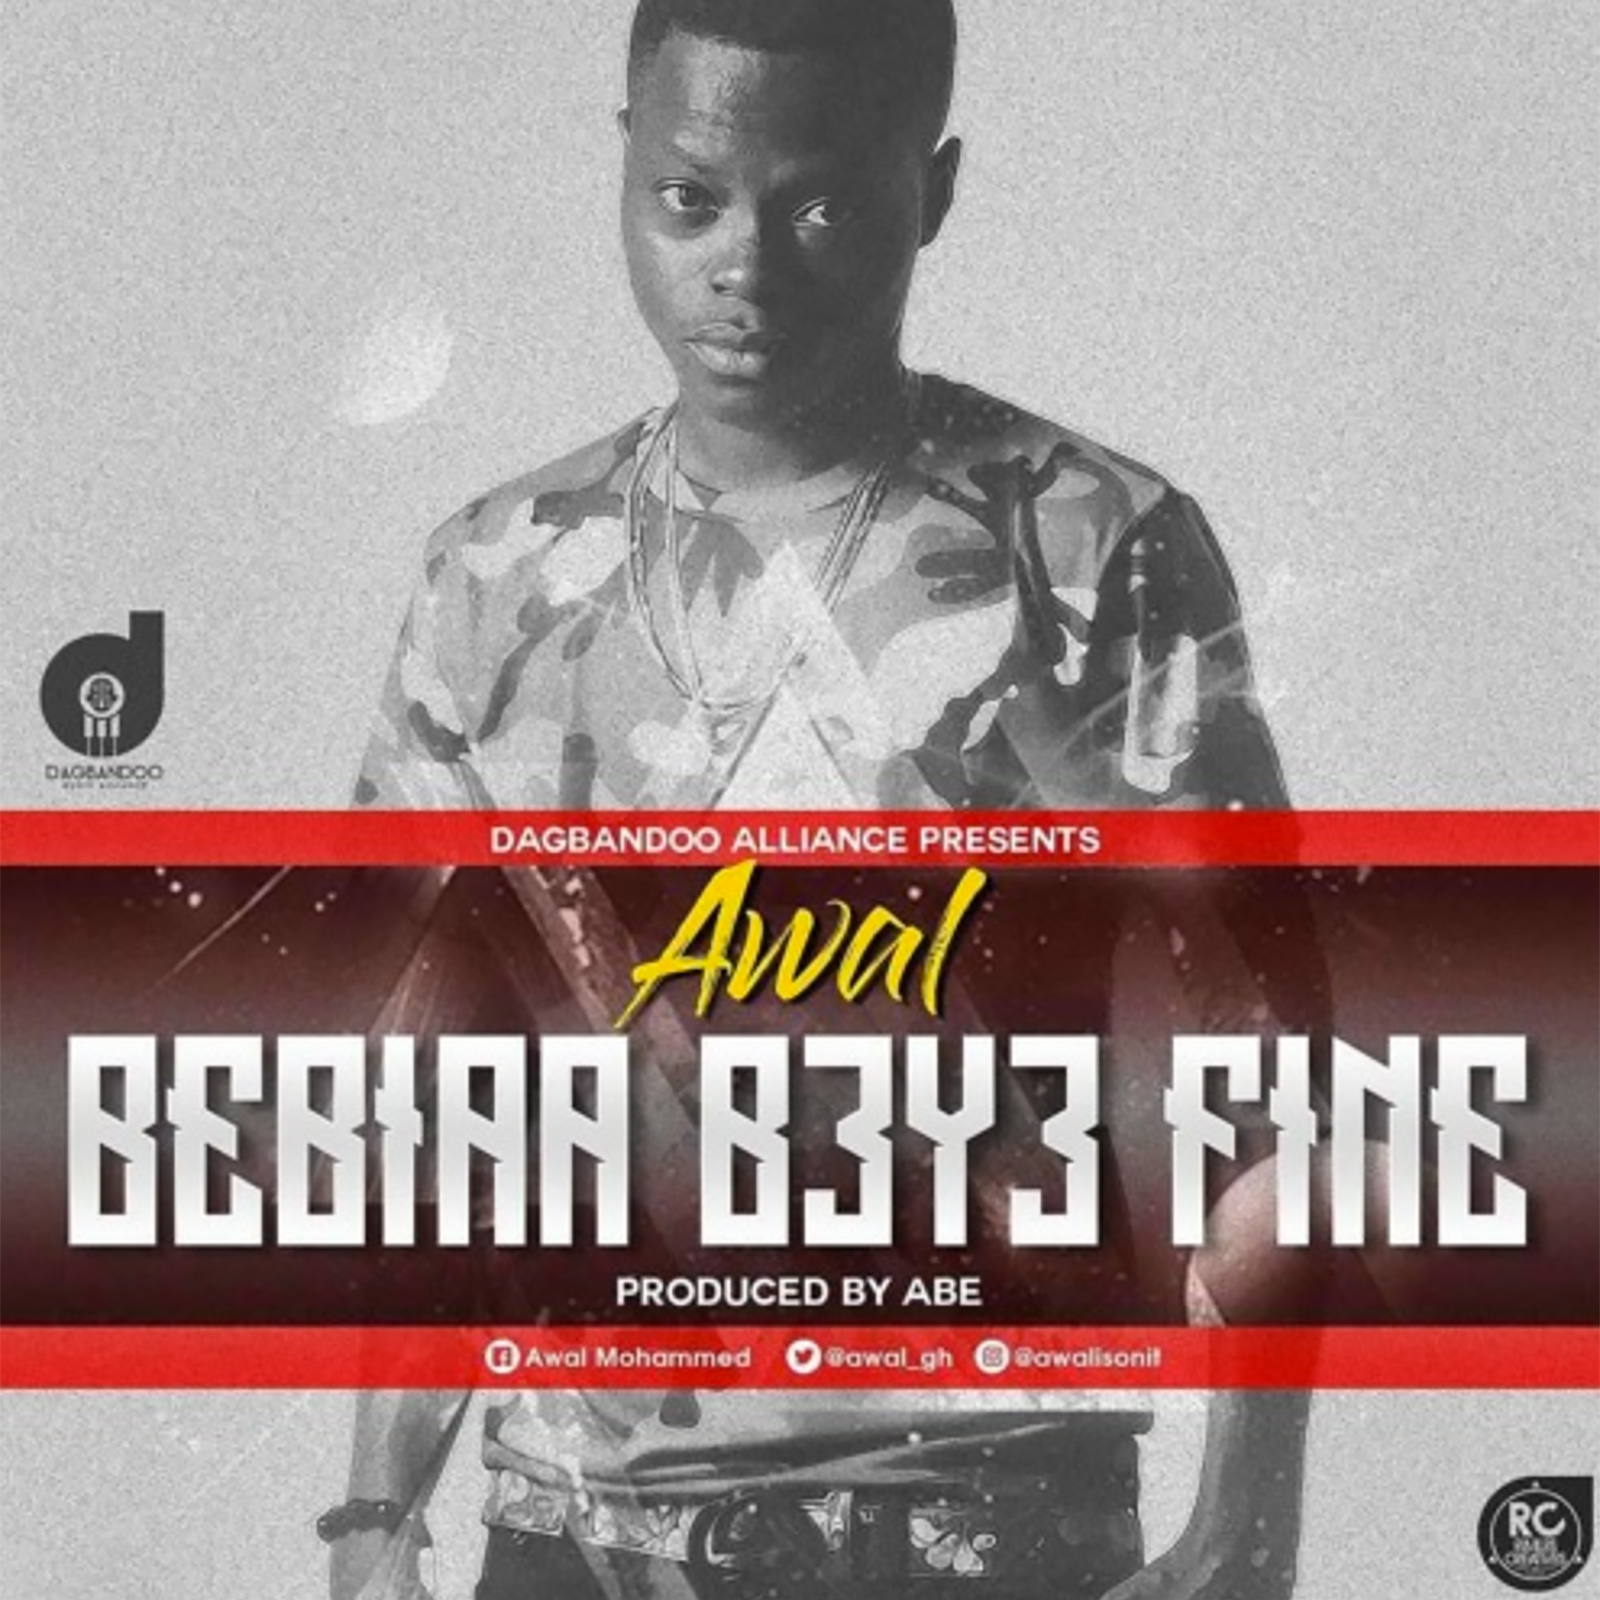 Bibiaa B3y3 Fine by Awal